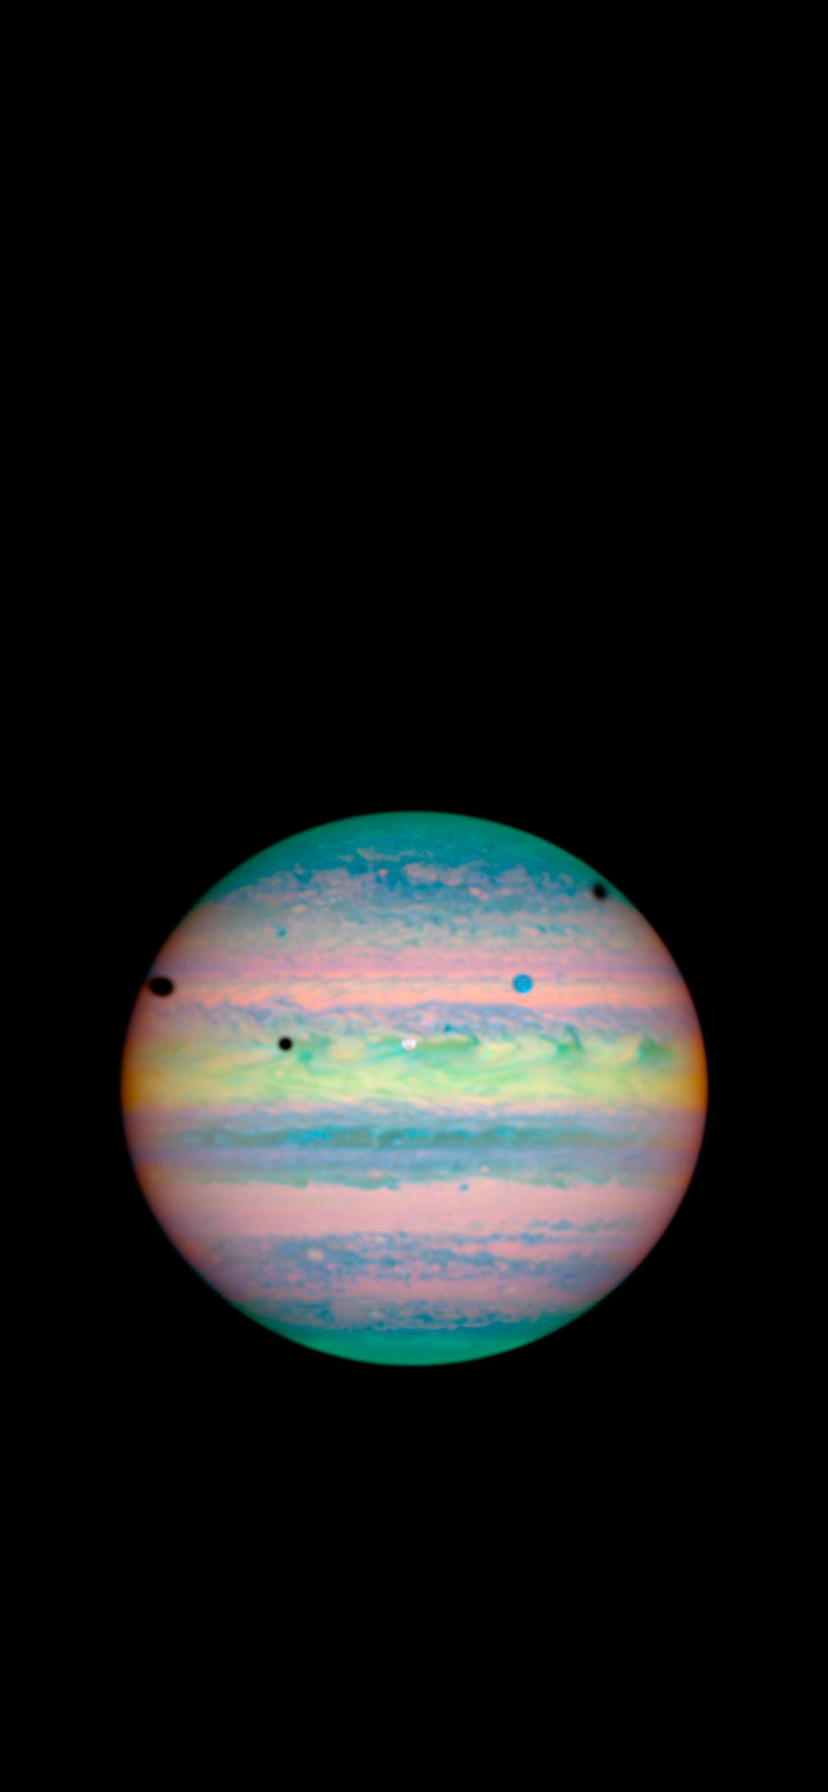 Jupiter And Its Moons Wallpaper Wallaland